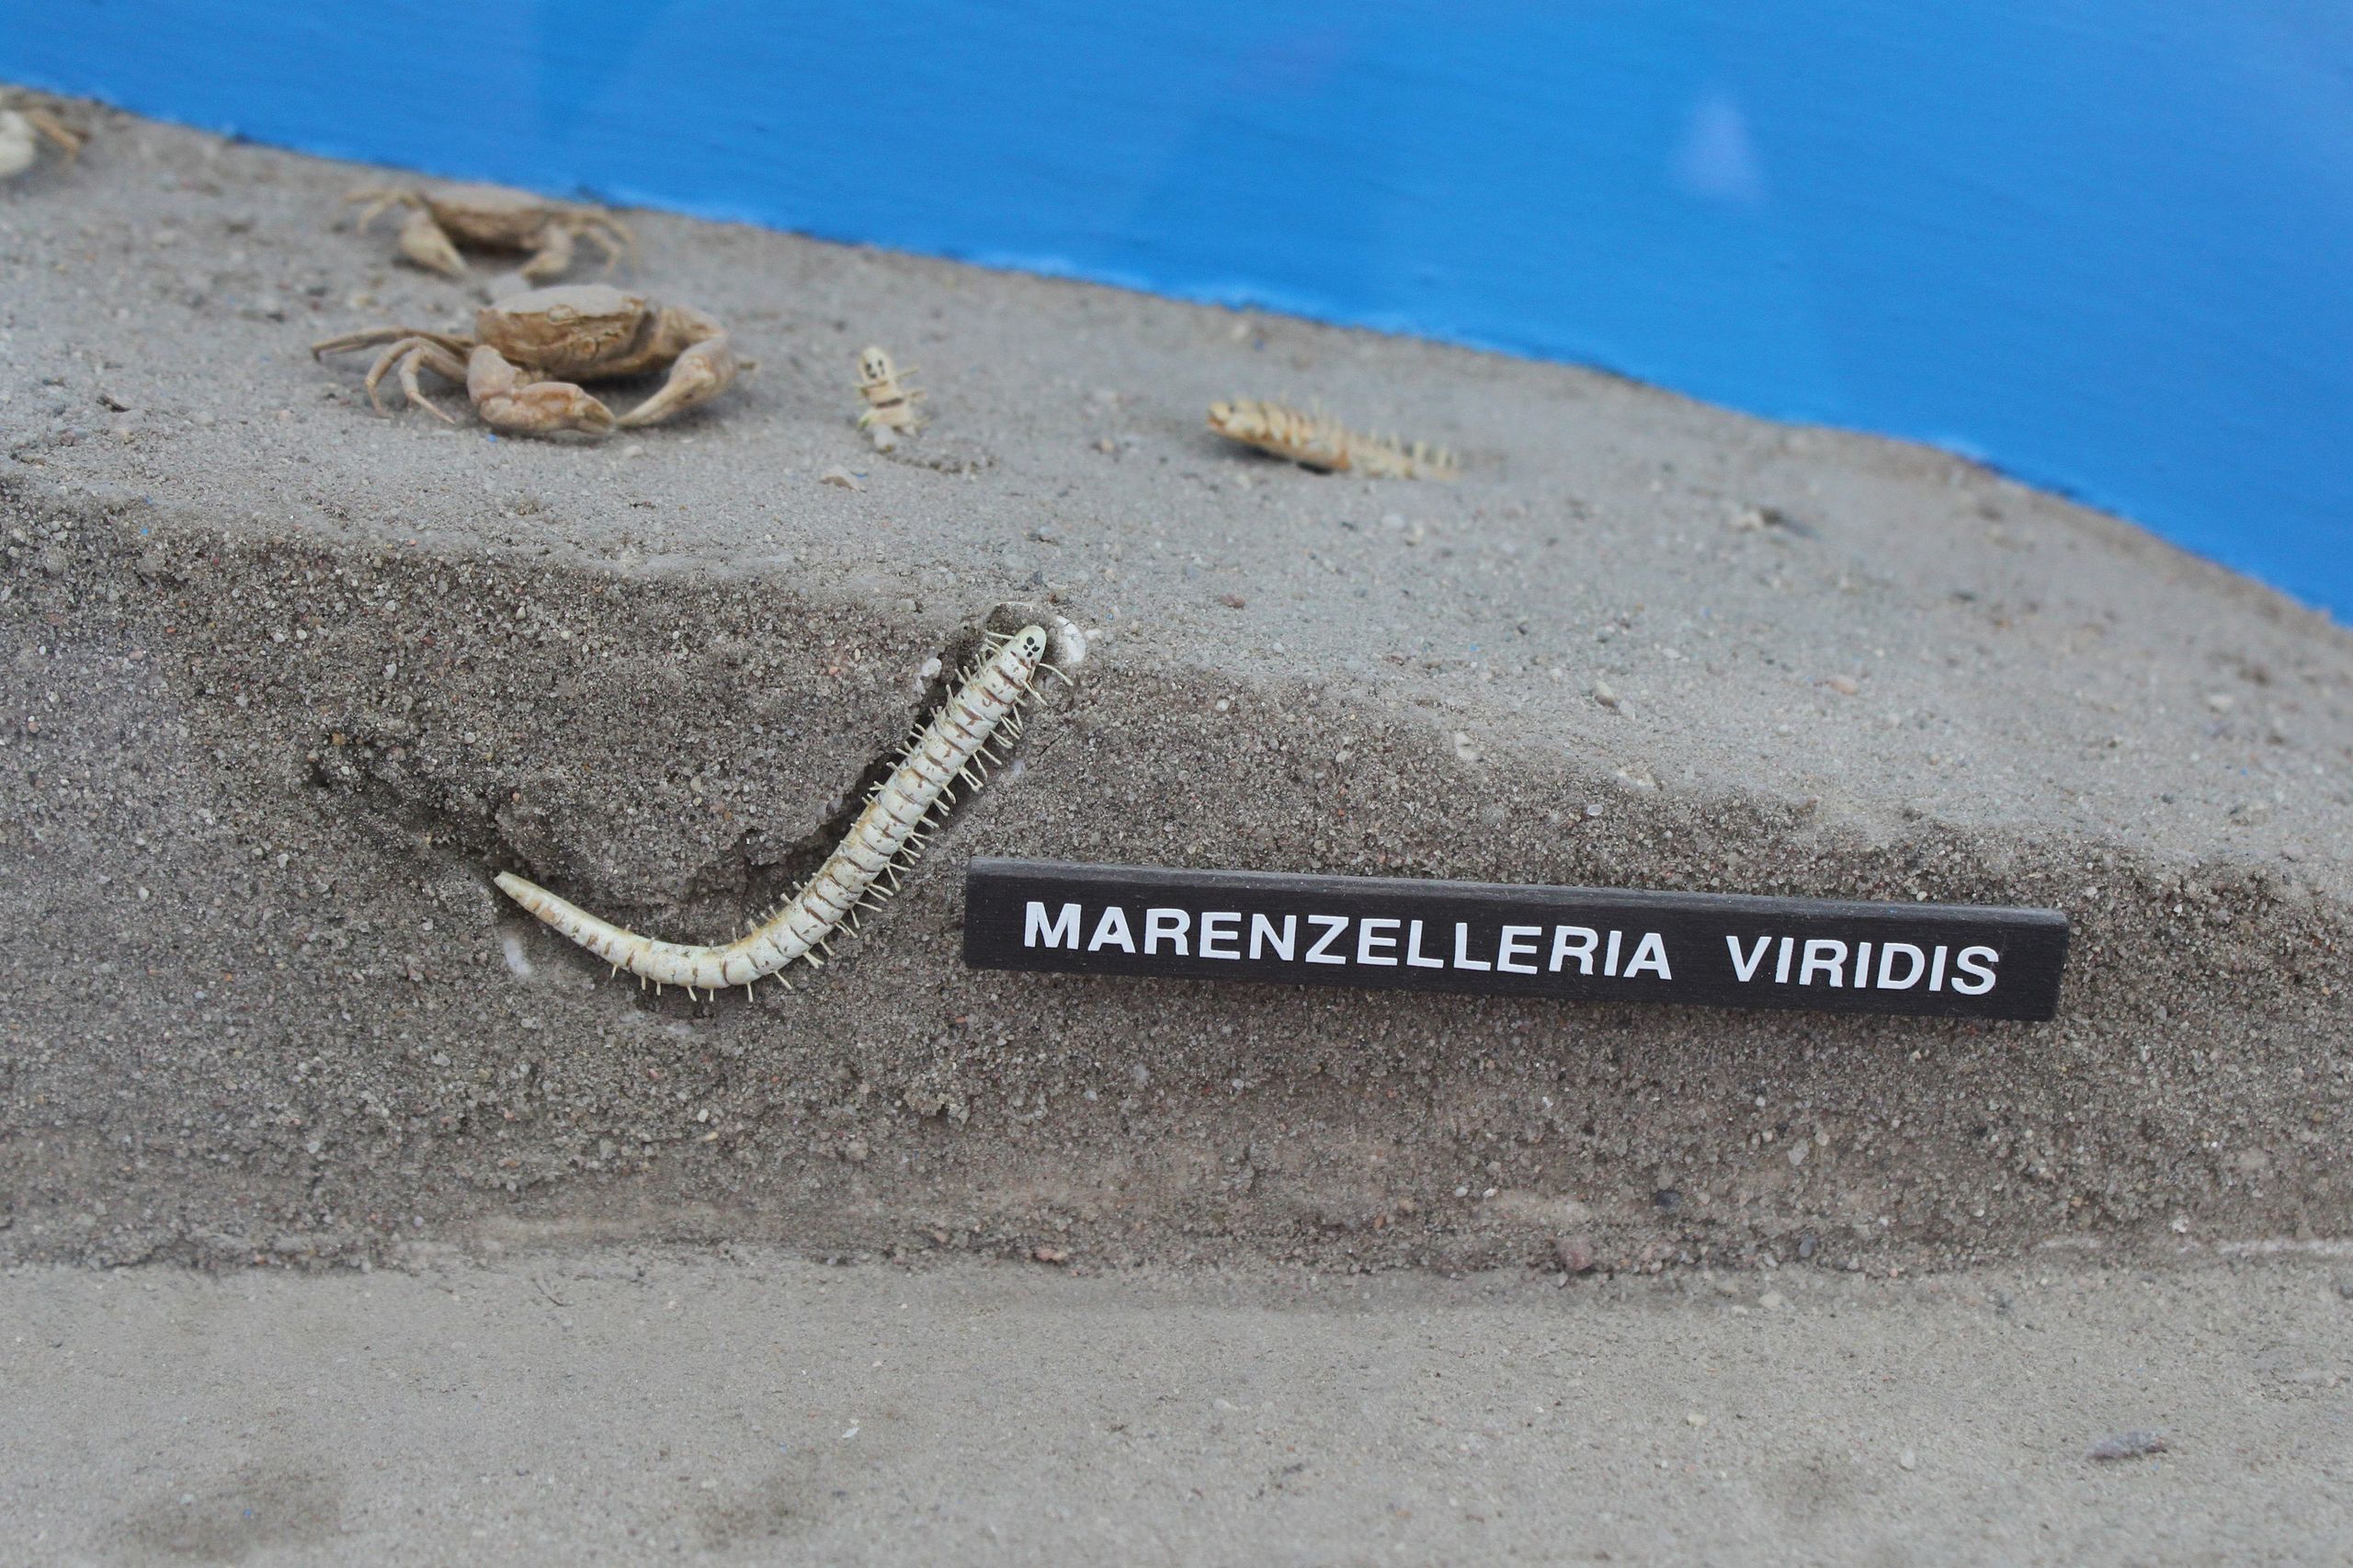 Marenzelleria viridis worm in the sand